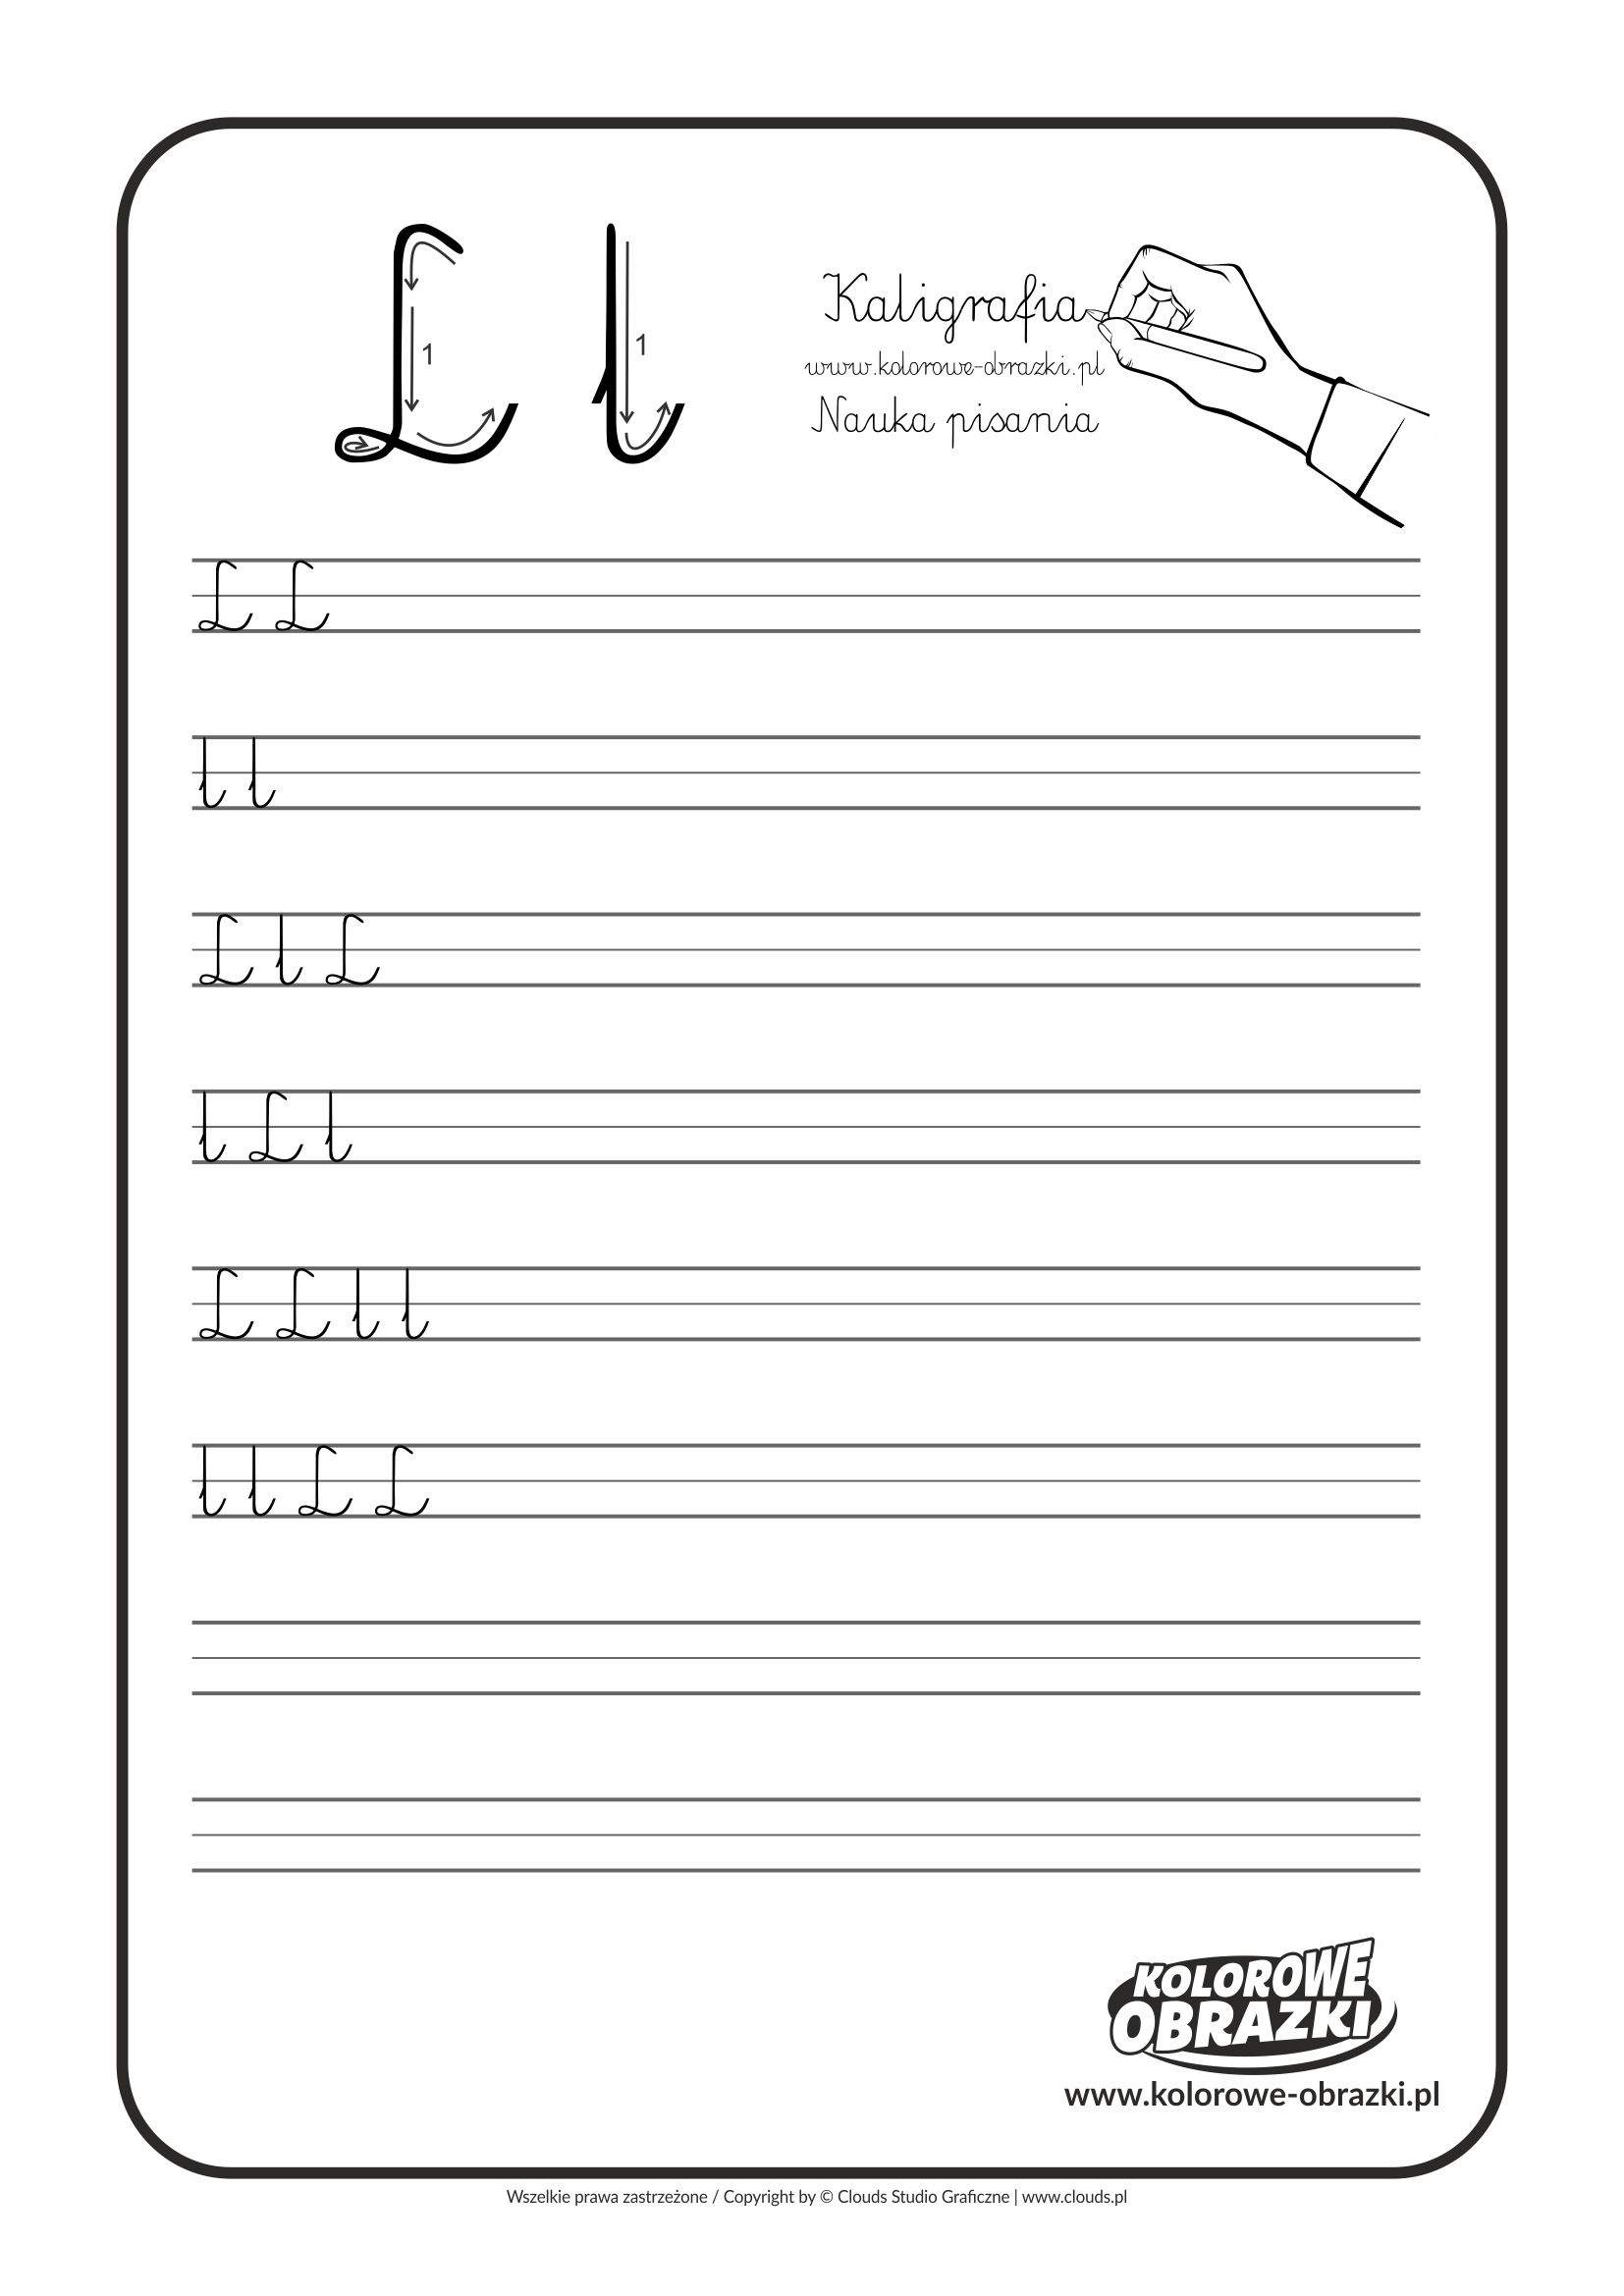 Kaligrafia dla dzieci - Ćwiczenia kaligraficzne / Litera L. Nauka pisania litery L